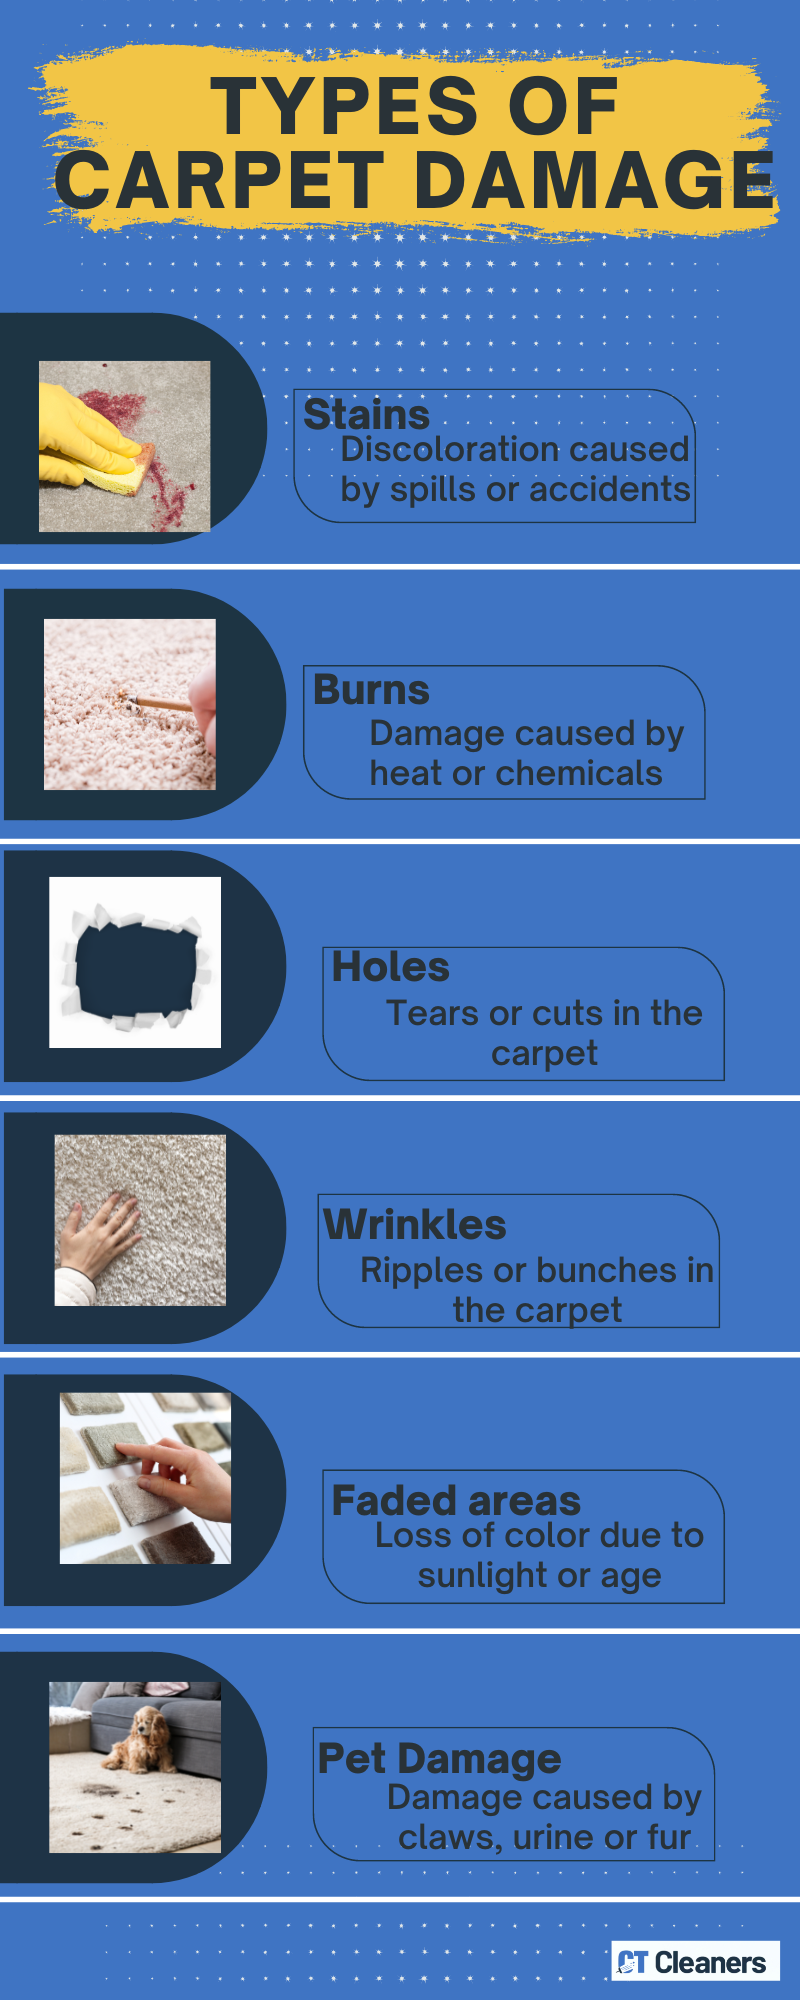 Types of Carpet Damage